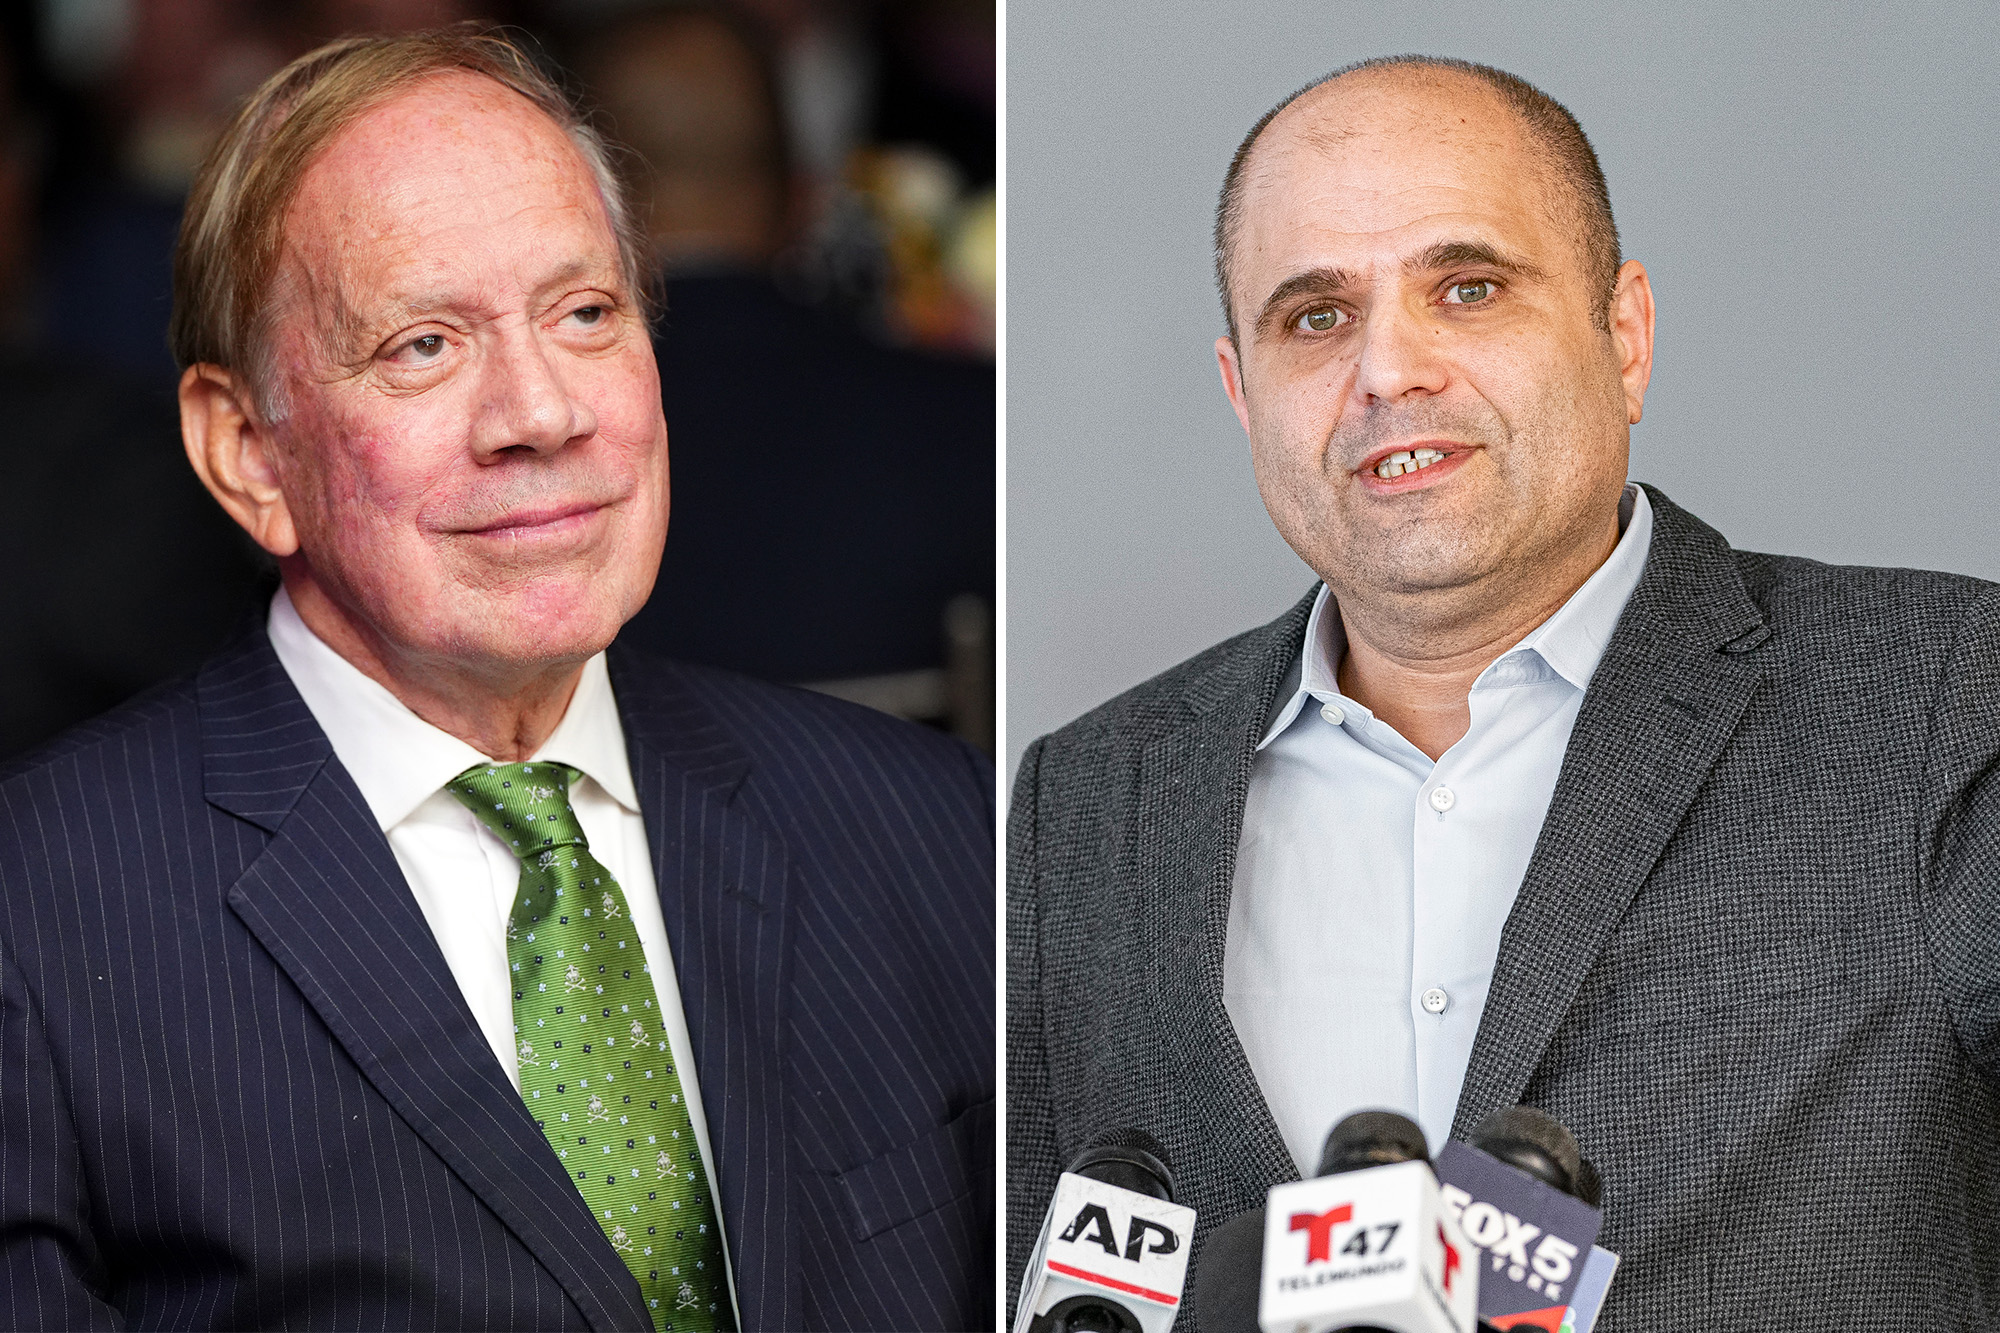 Former NY Governor Pataki backs GOP hopeful Eisen in Senate race against Gillibrand